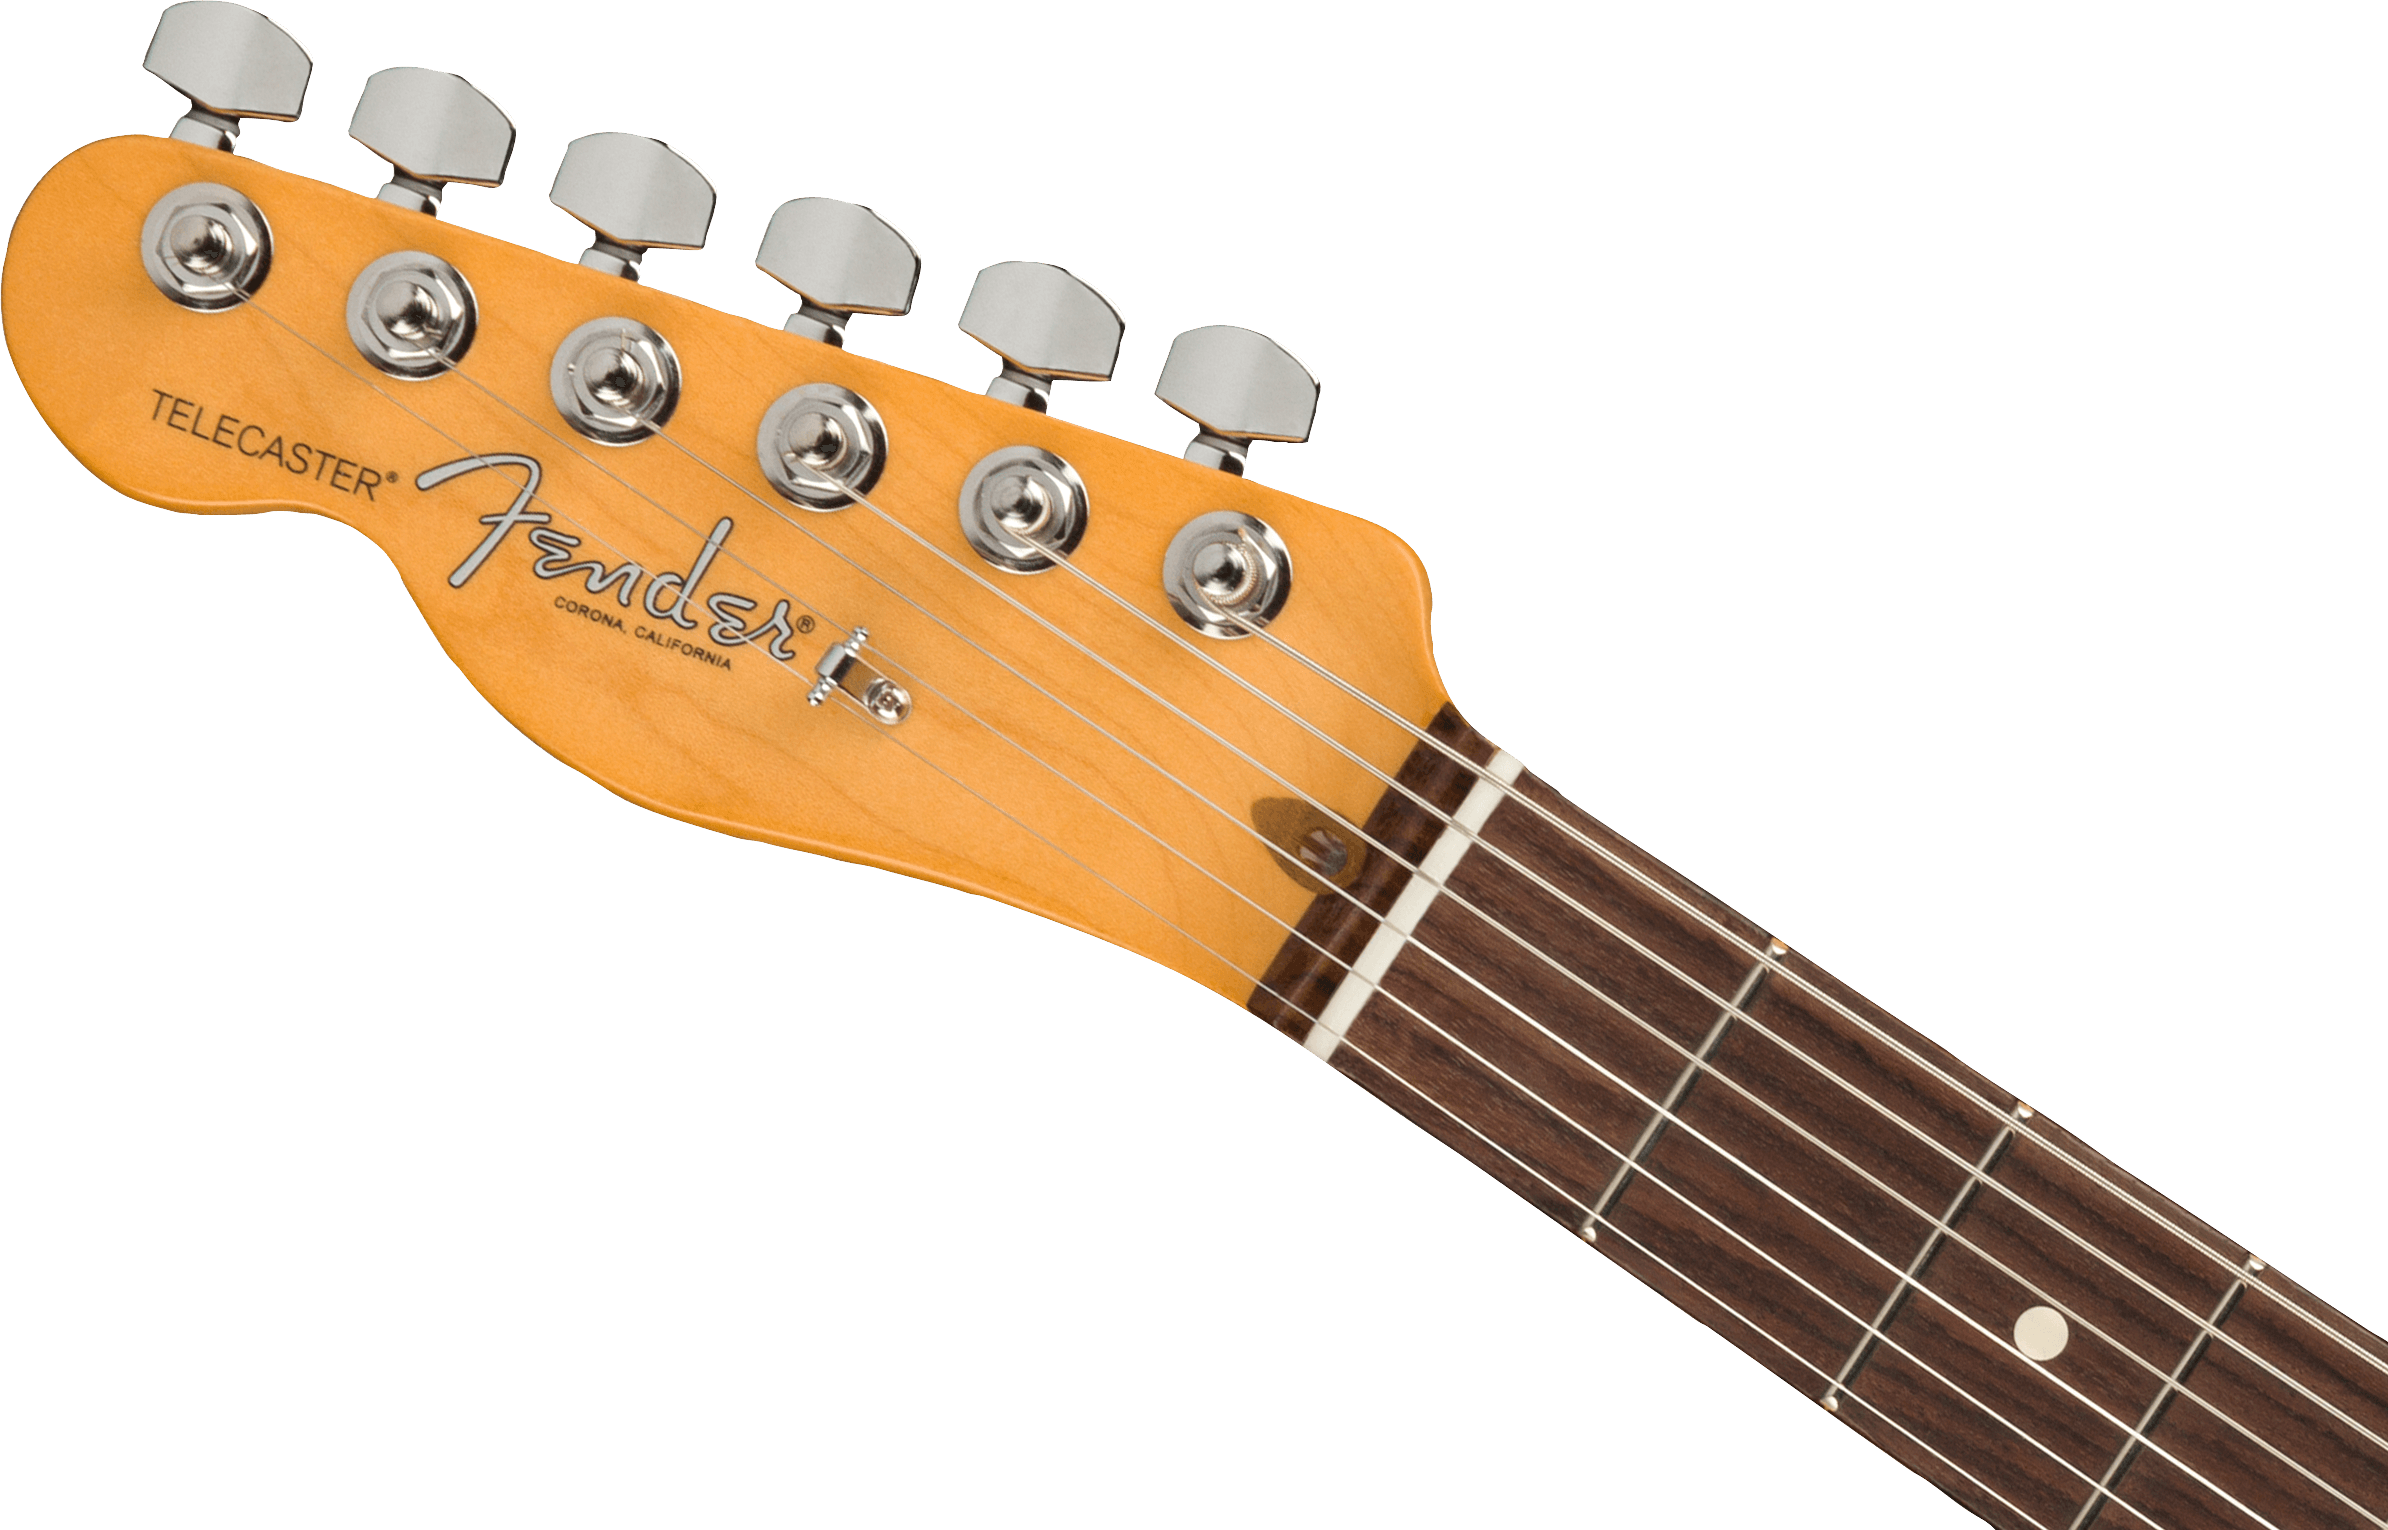 Fender American Professional II Telecaster® Left-Hand, Rosewood Fingerboard, 3-Color Sunburst